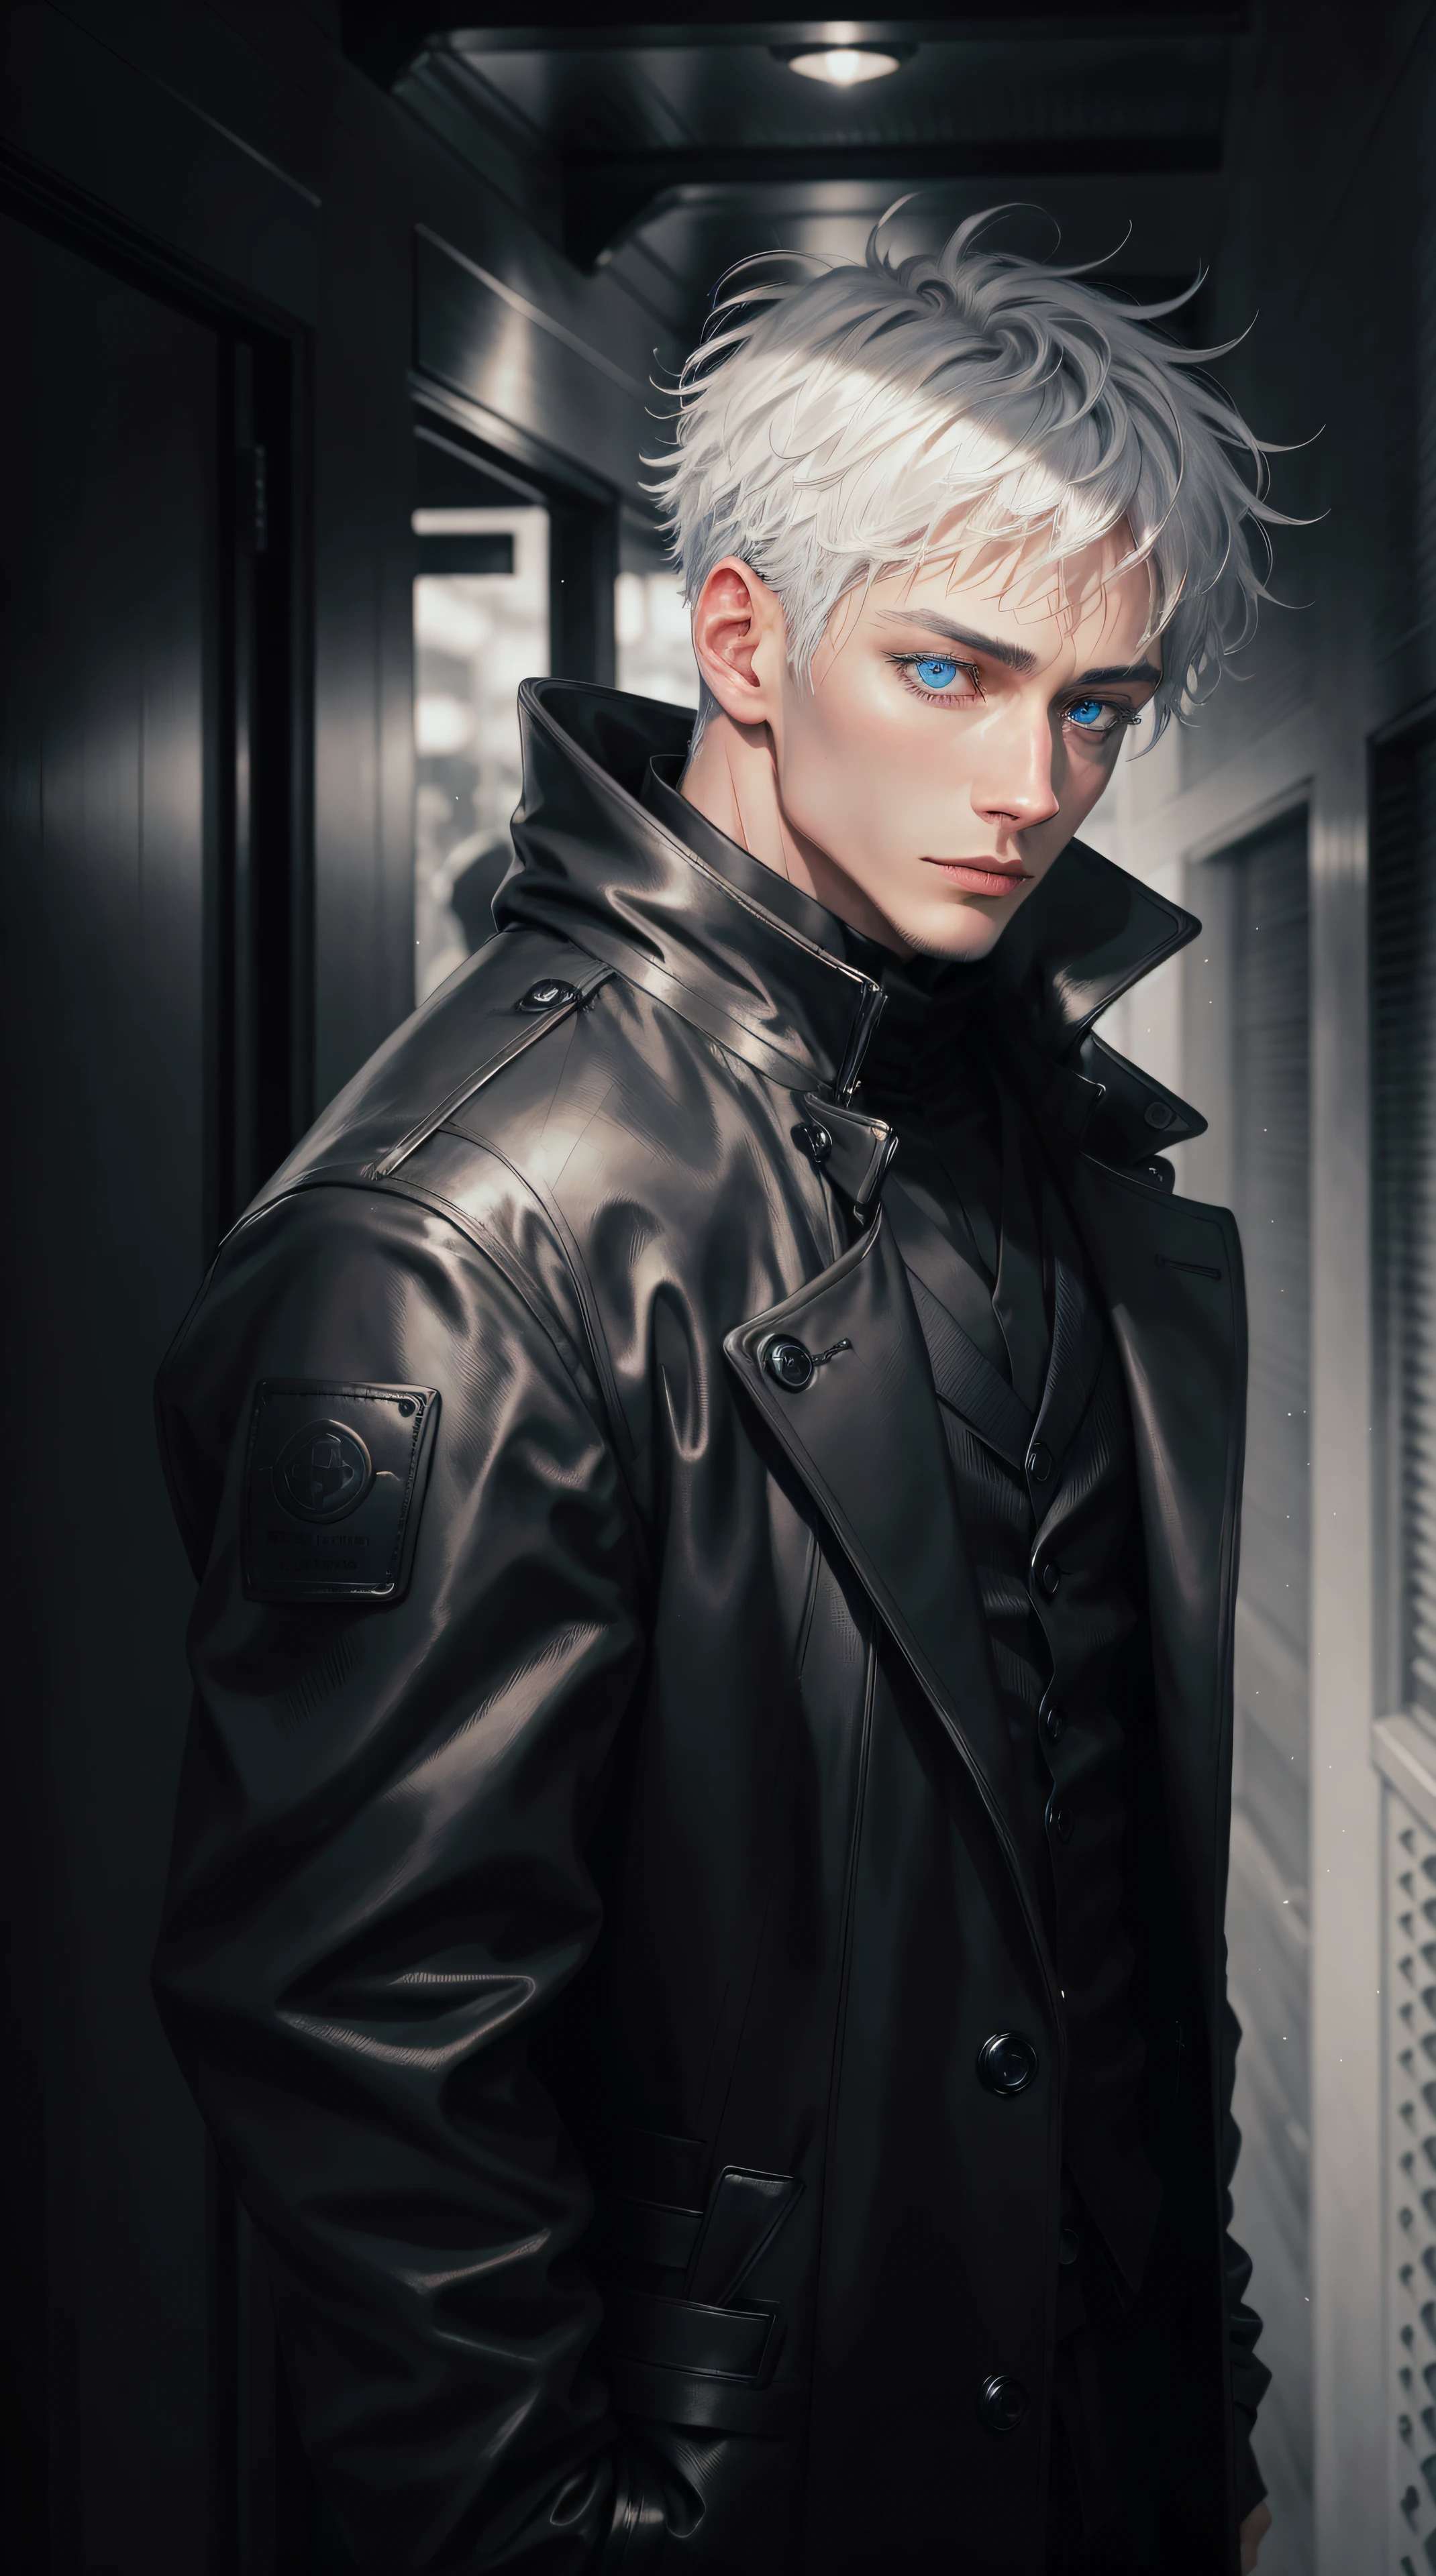 Черное зимнее мужское пальто черная одежда,Сатору Годзё,белые волосы,короткие волосы,волосы между глазами,голубые глаза,цветные ресницы,темный деловой костюм, черный формальный наряд, черный плащ, идти прямо,(фотореалистичный:1.4), (шедевр, боковое освещение, прекрасно детализированные красивые глаза: 1.2),Черные кожаные перчатки, выстрел в полный рост, с завязанными глазами, glowing голубые глаза, вся черно-белая картинка, only голубые глаза